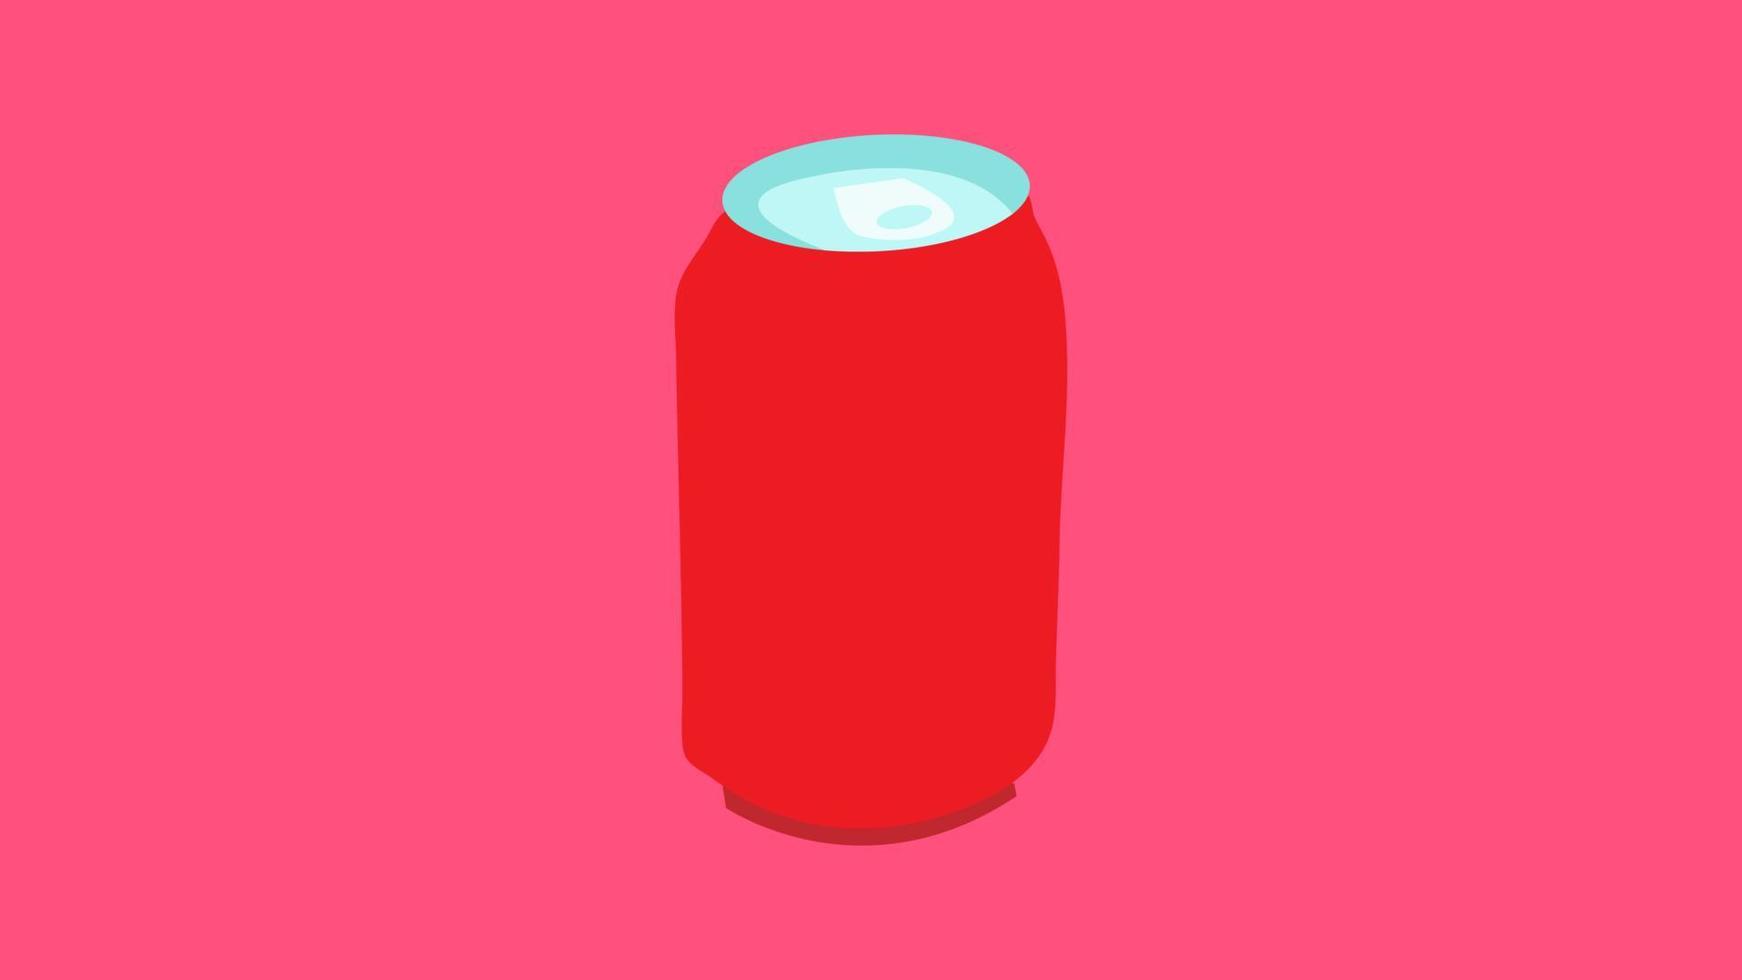 bouteille en étain sur fond rose, illustration vectorielle. bouteille pour boissons et limonades. récipient pour soda rouge. limonade dans un emballage jetable. nuire à l'environnement vecteur